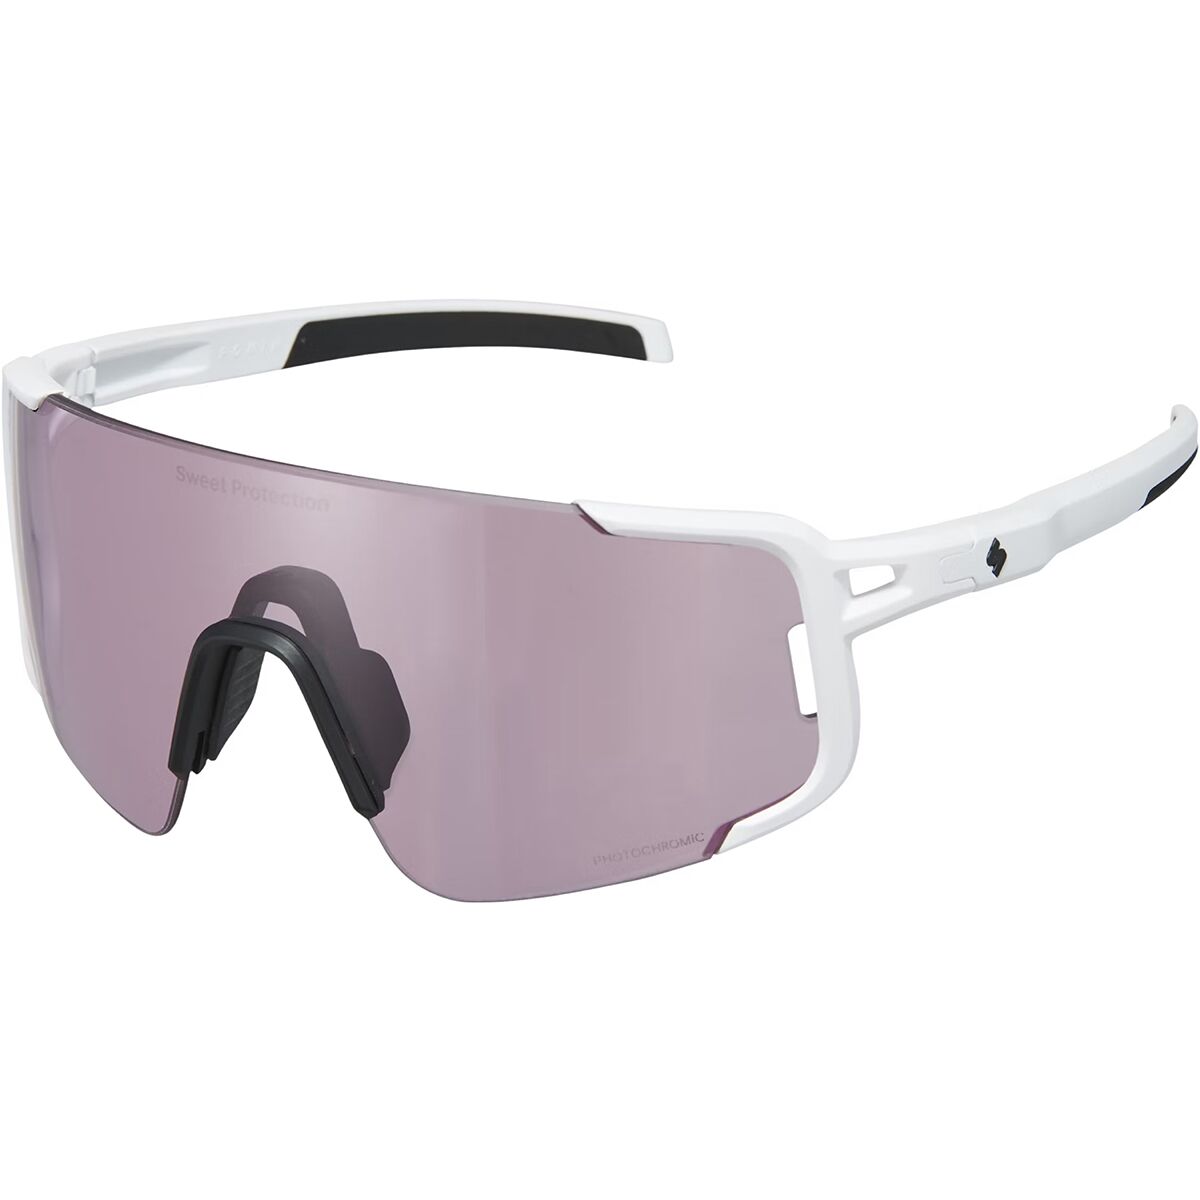 Фотохромные солнцезащитные очки ronin rig Sweet Protection, цвет rig photochromic/matte white